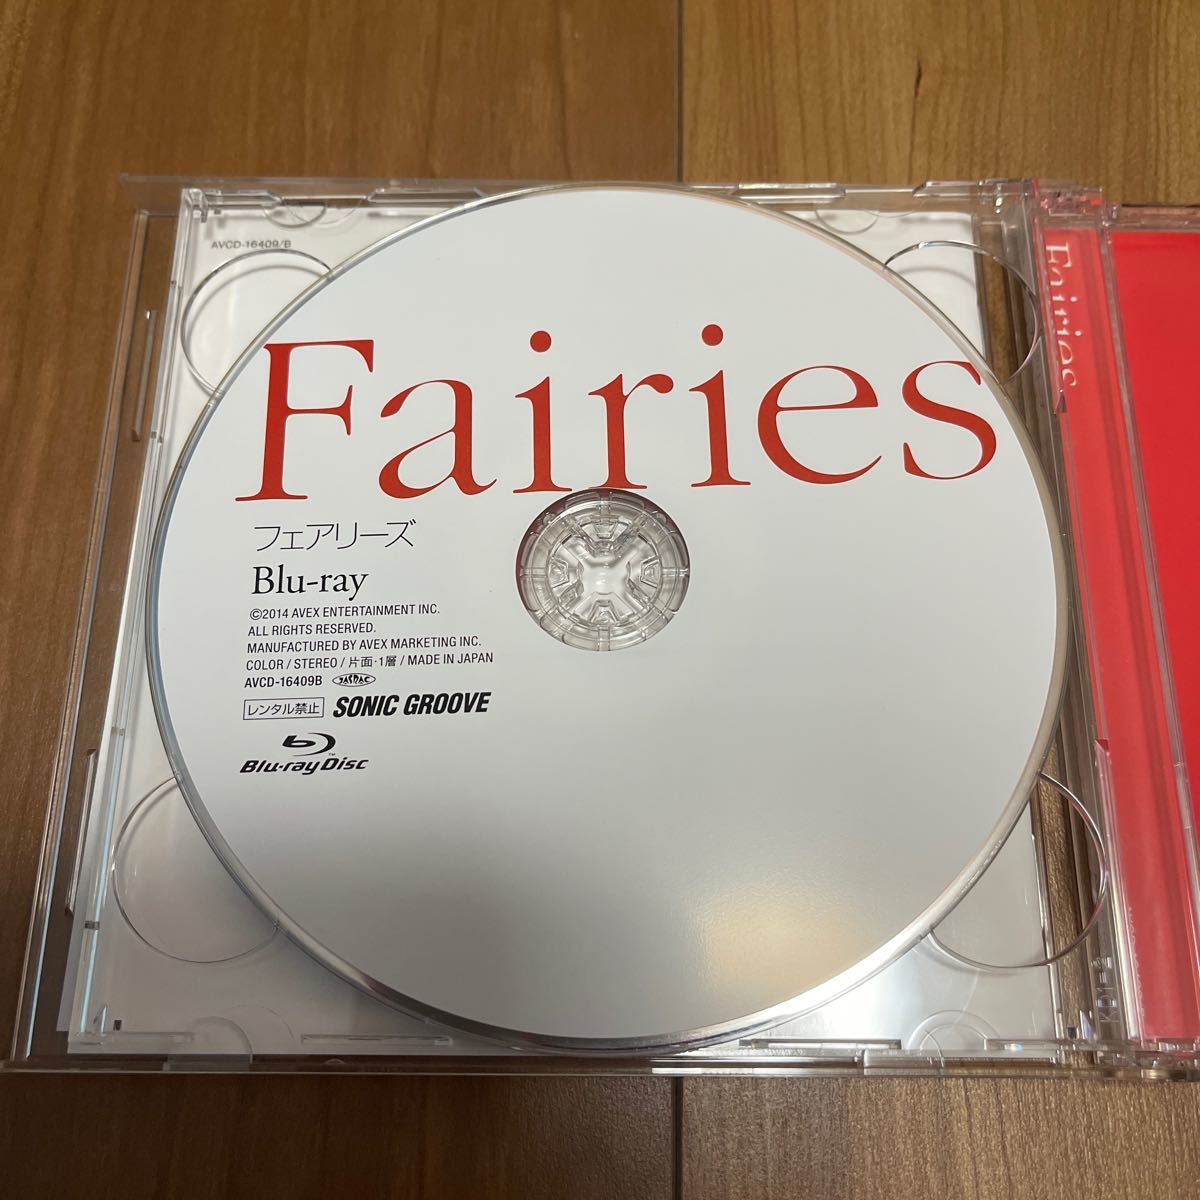 フェアリーズ　Fairies ベストアルバム CD+Blu-ray 中古